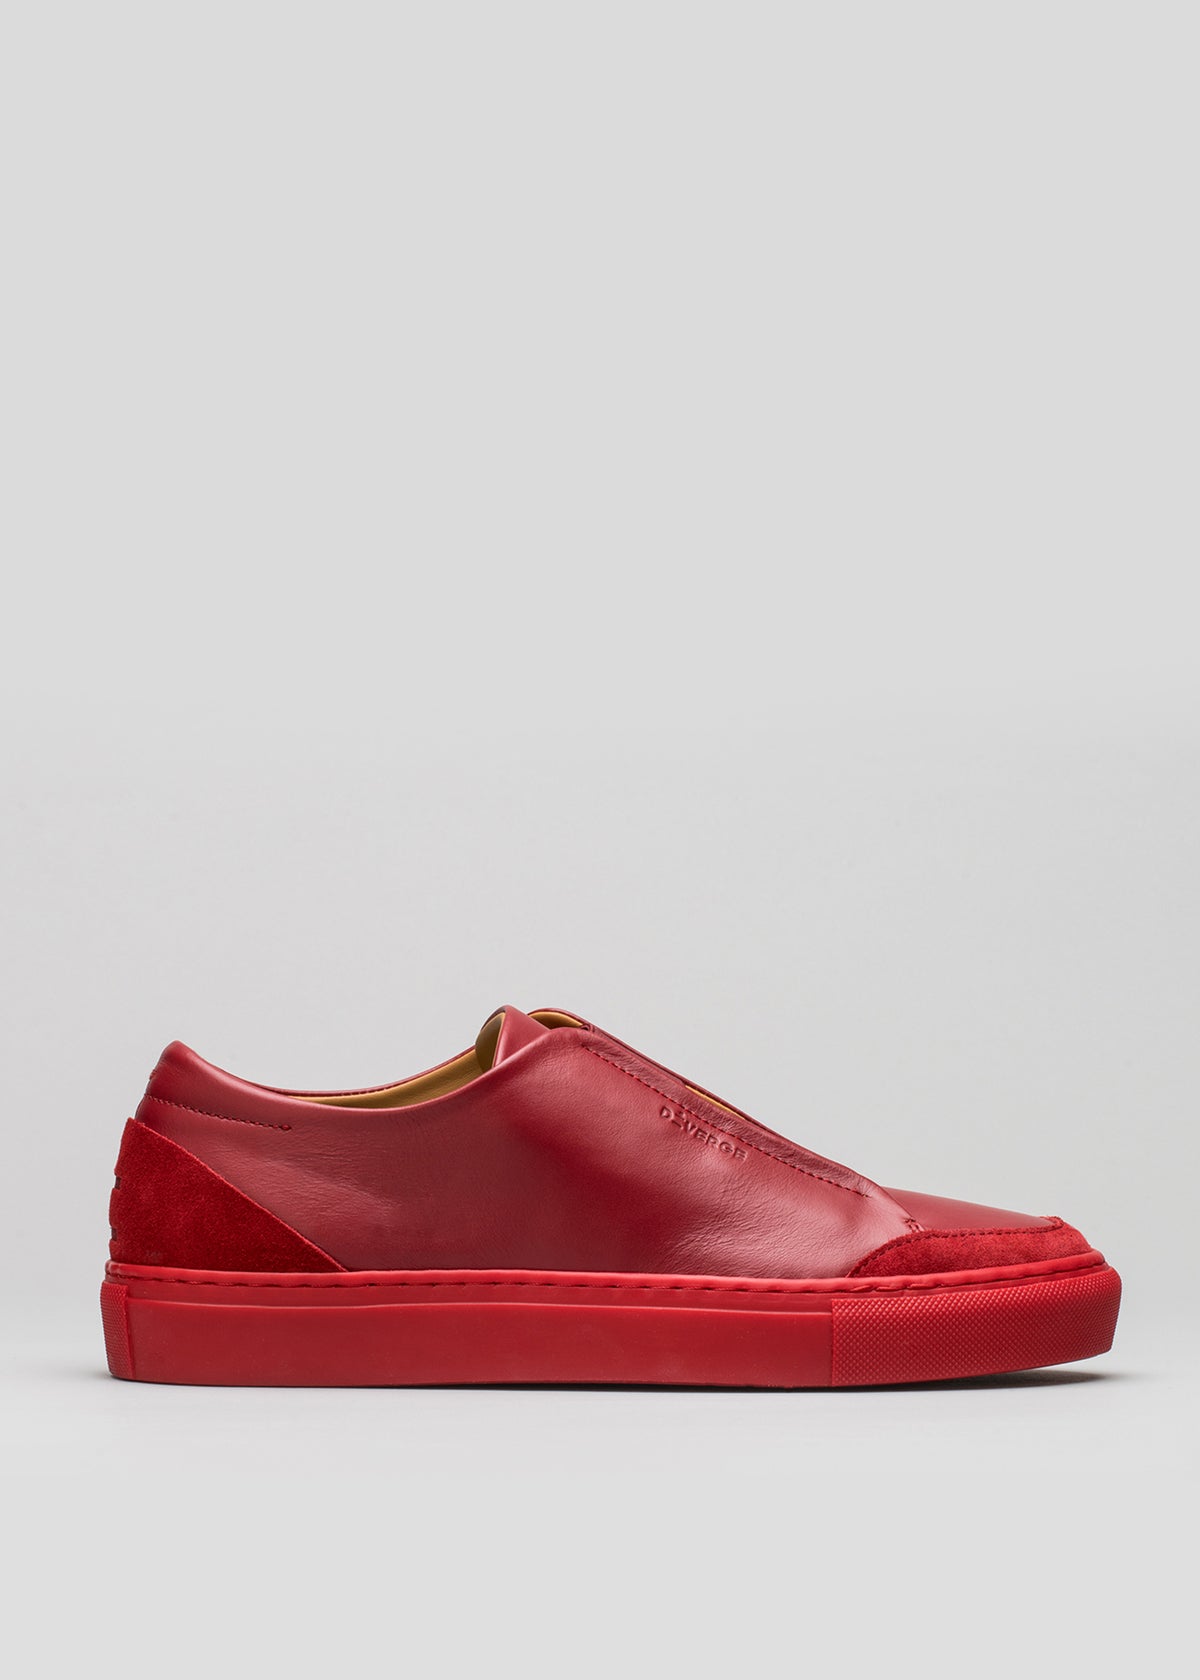 V3 Red Wine Leather è una sneaker slip-on con tomaia testurizzata e suola rossa abbinata, su sfondo neutro.